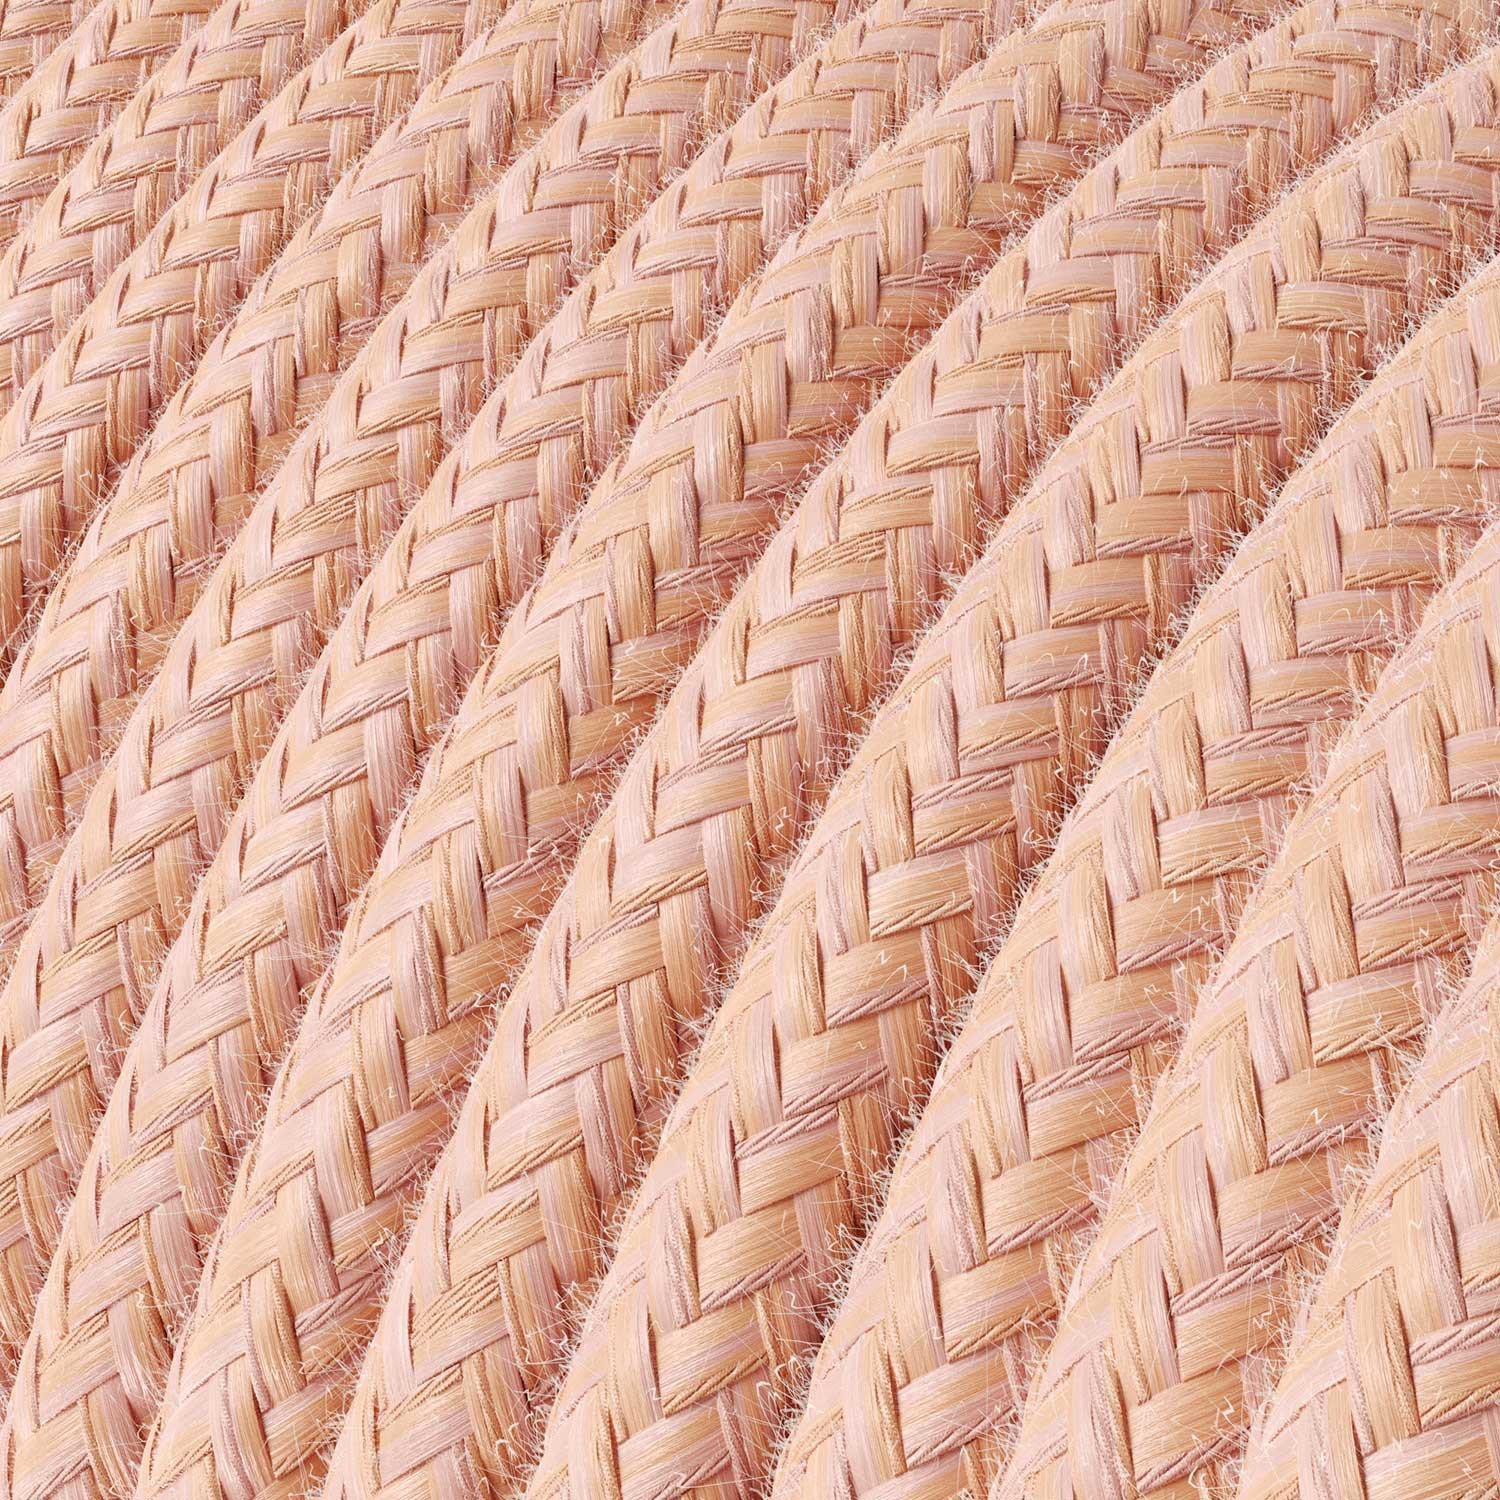 Textilkabel, lachsrosa, aus Baumwolle - Das Original von Creative-Cables - RX13 rund 2x0.75mm / 3x0.75mm